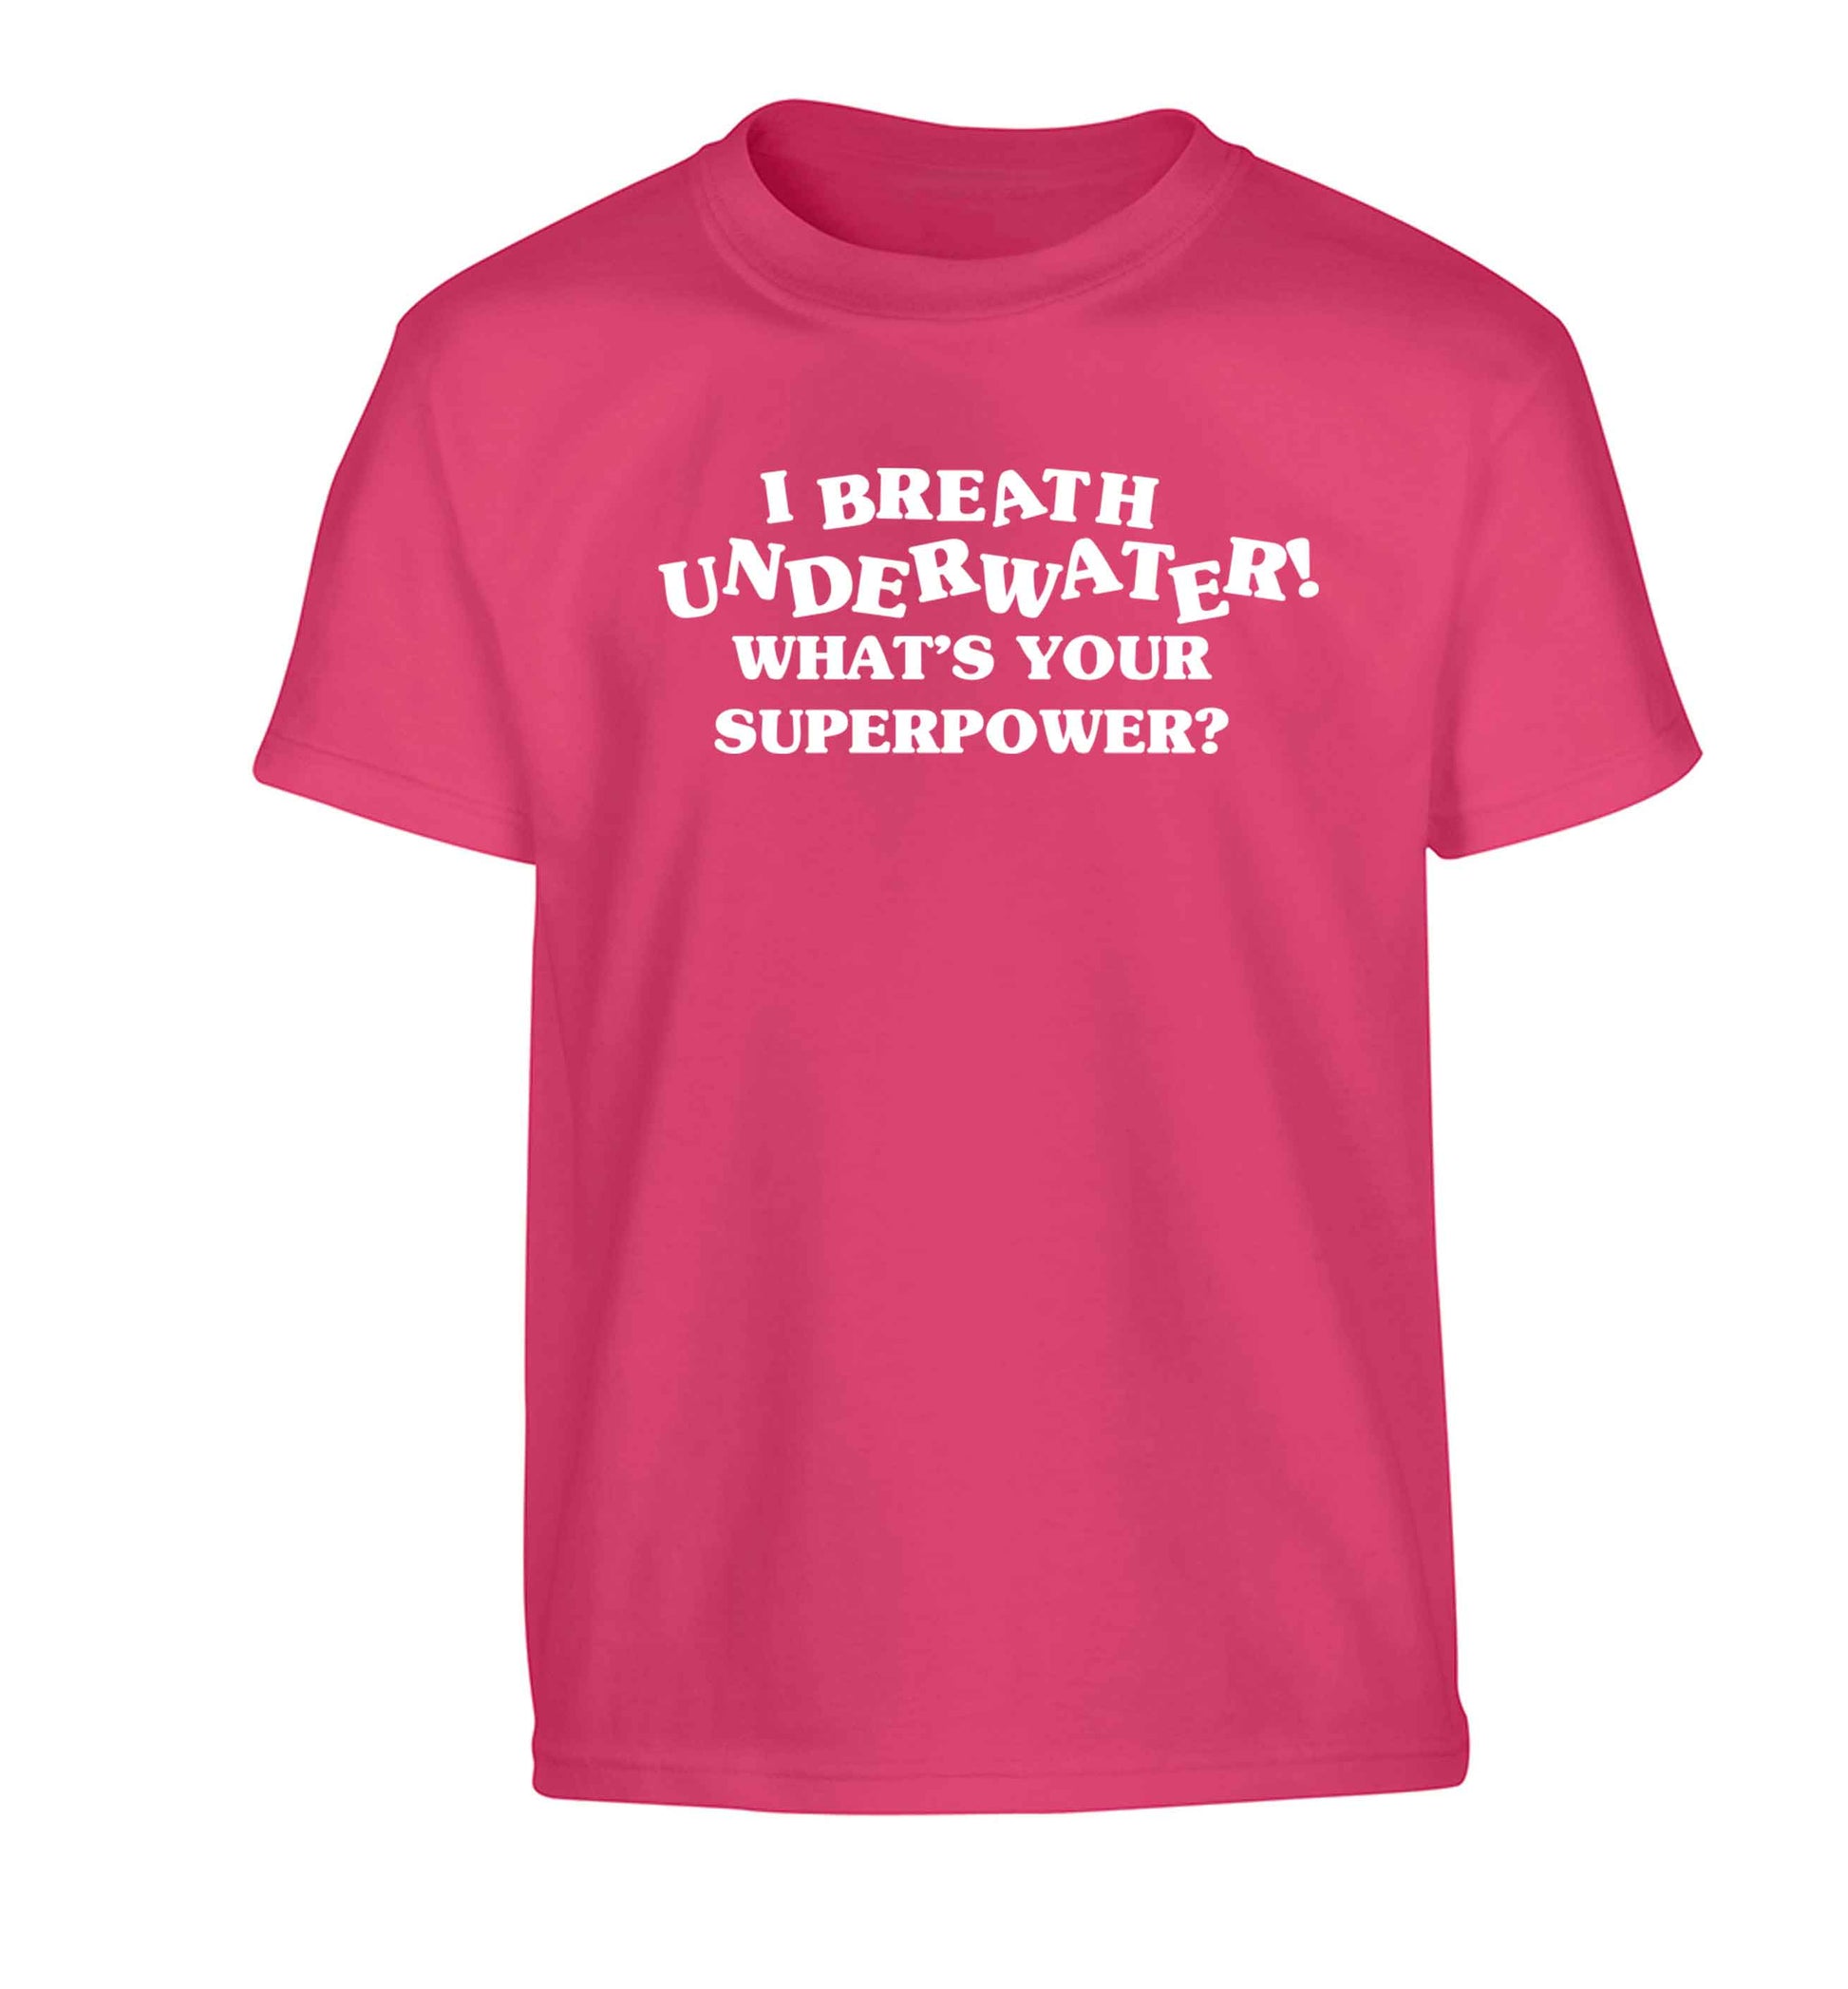 I breath underwater what's your superpower? Children's pink Tshirt 12-13 Years